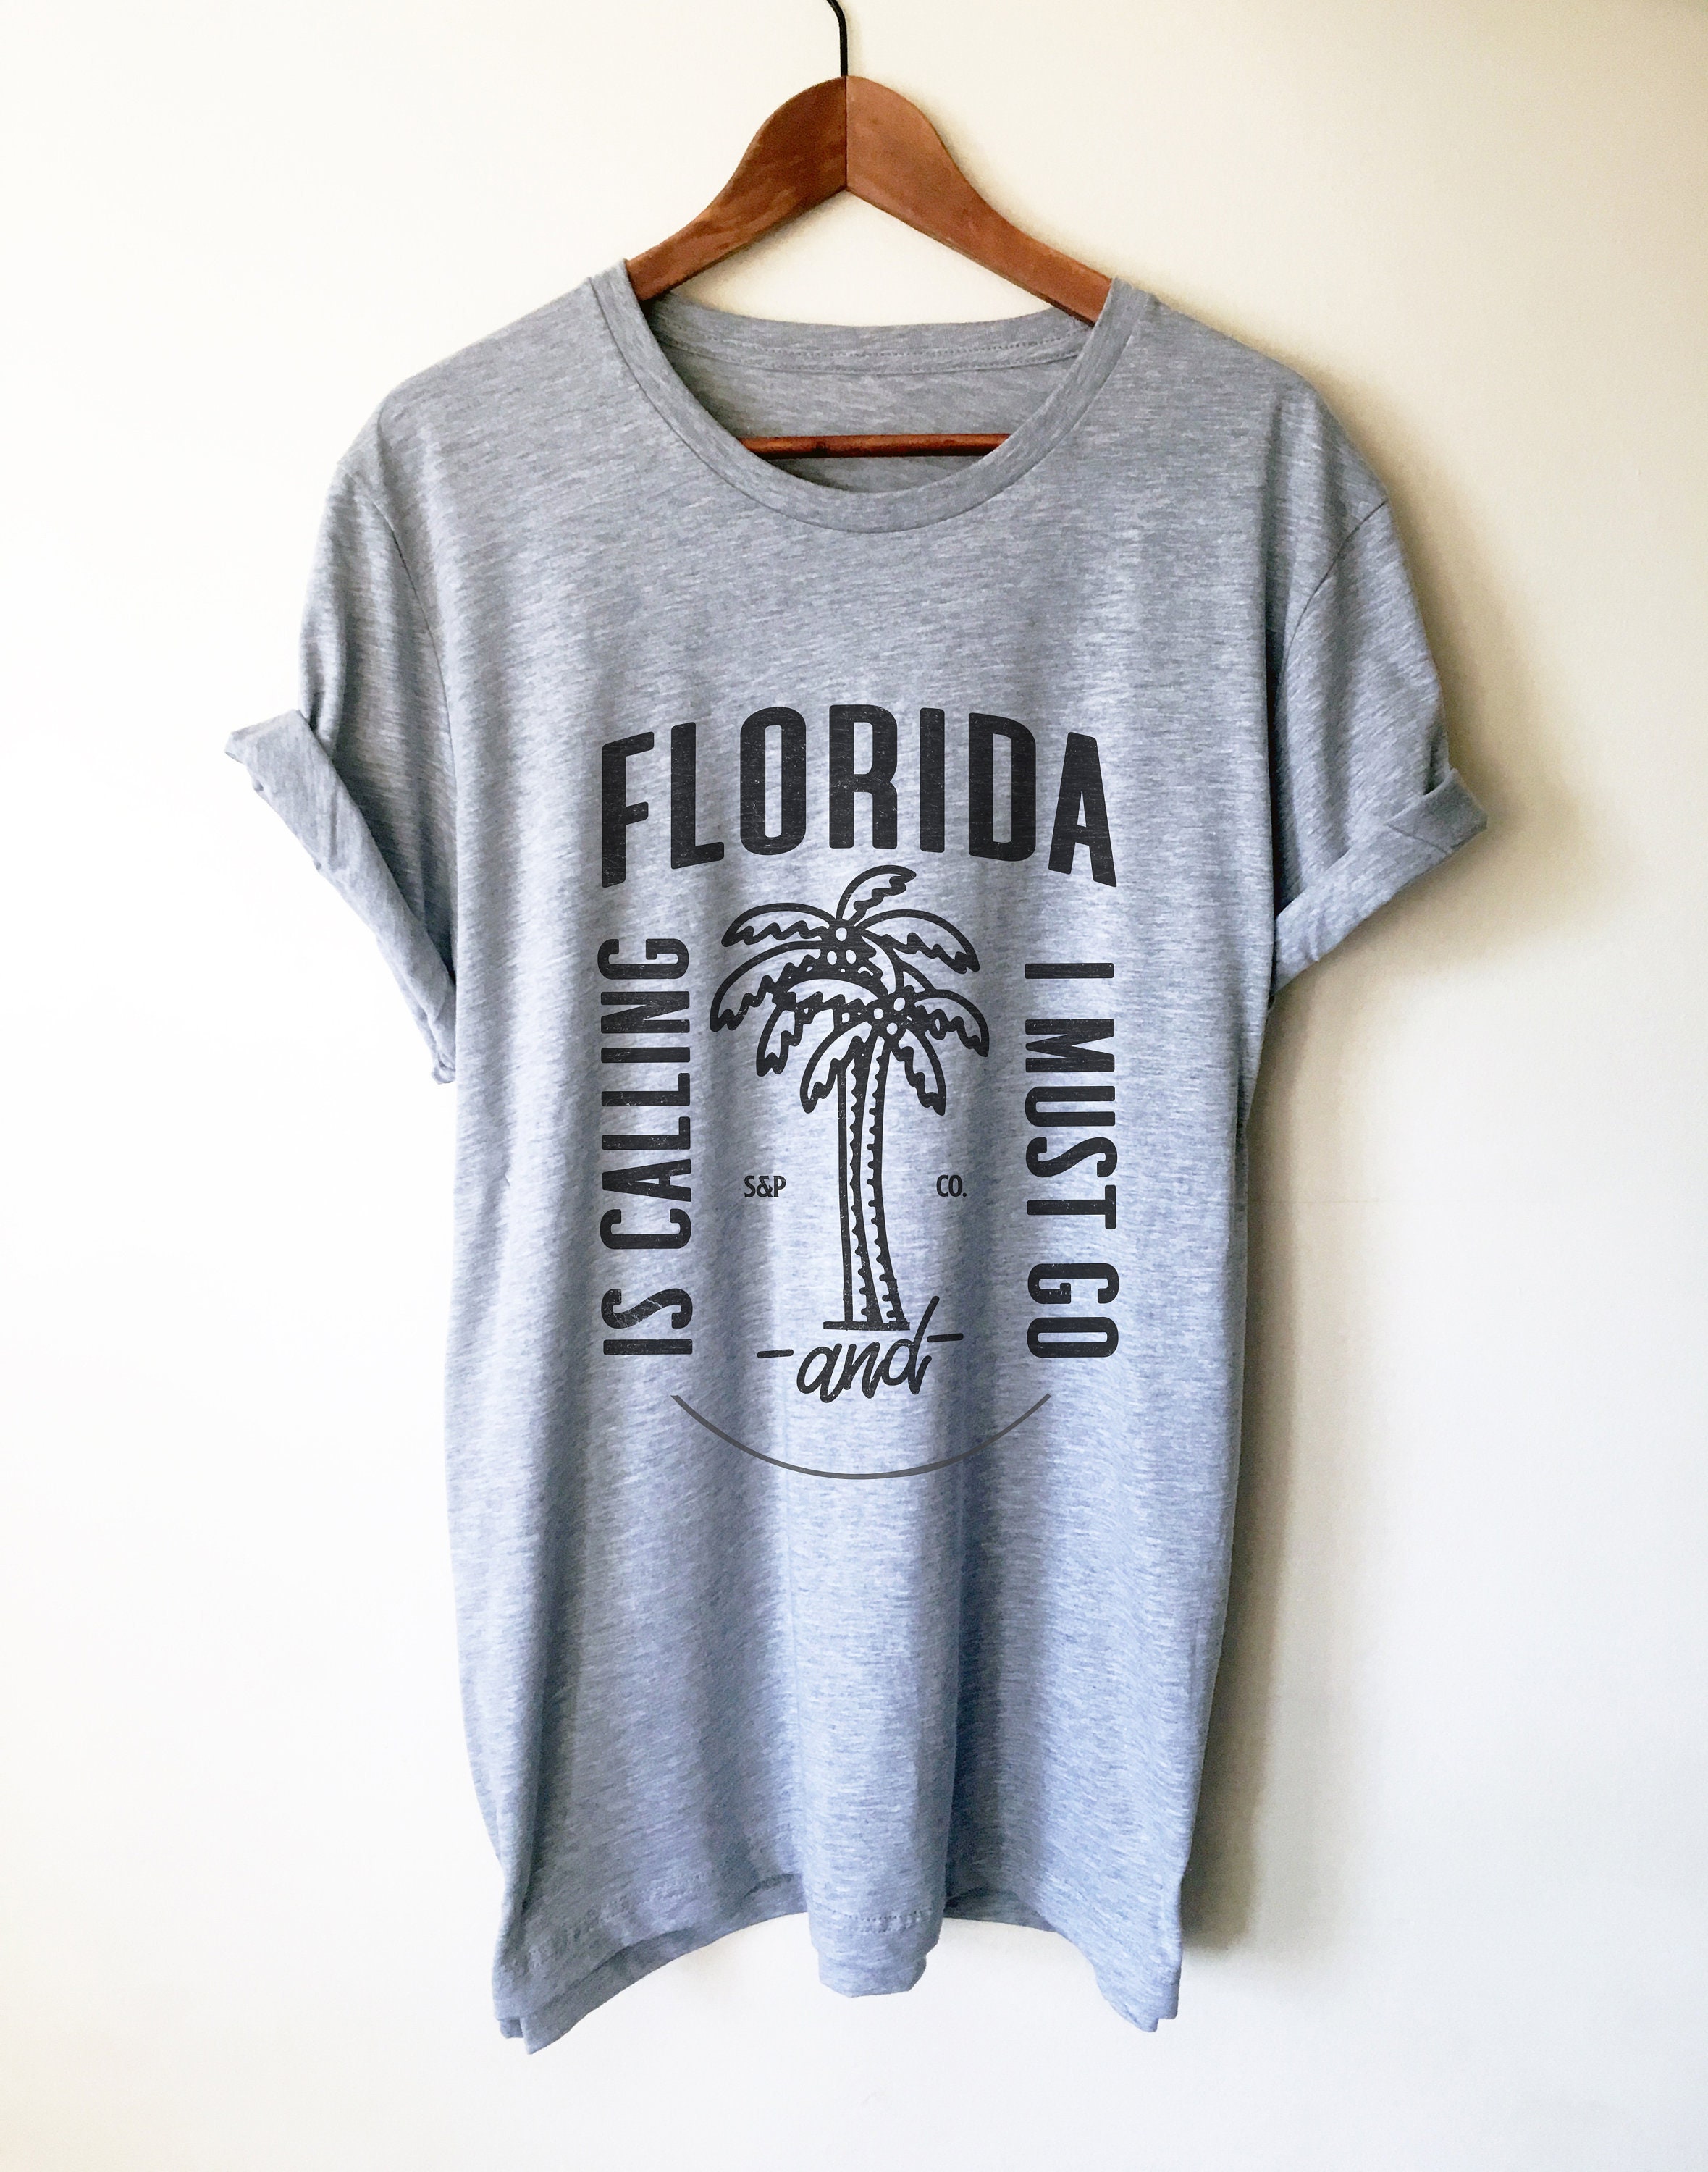 Florida Is Calling And I Must Go Unisex Shirt Florida Shirt | Etsy